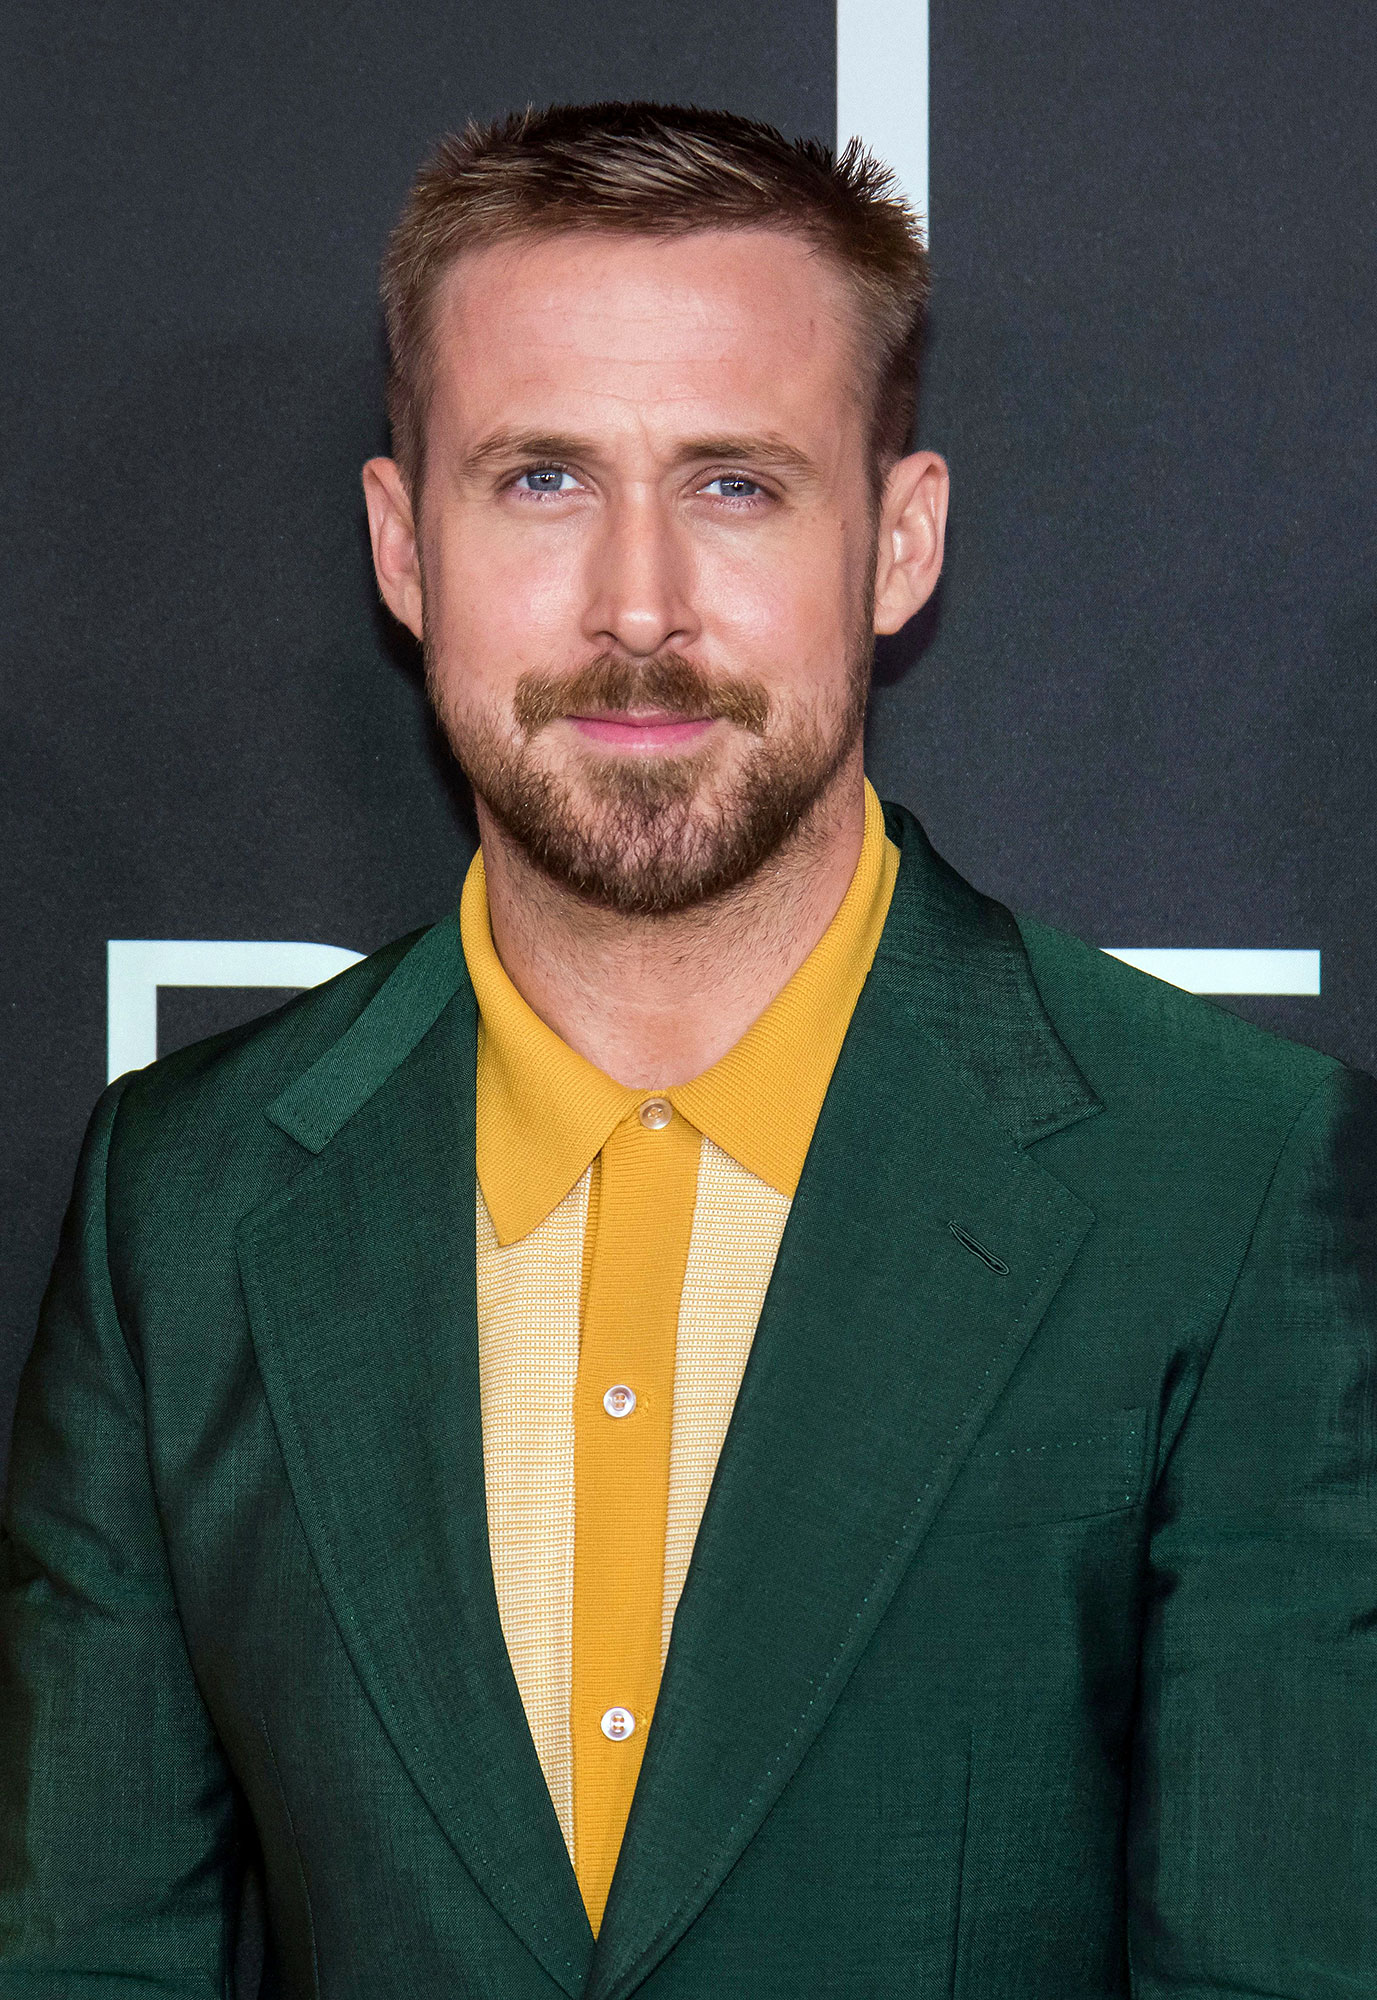 Ryan Gosling and Eva Mendes' Relationship Timeline